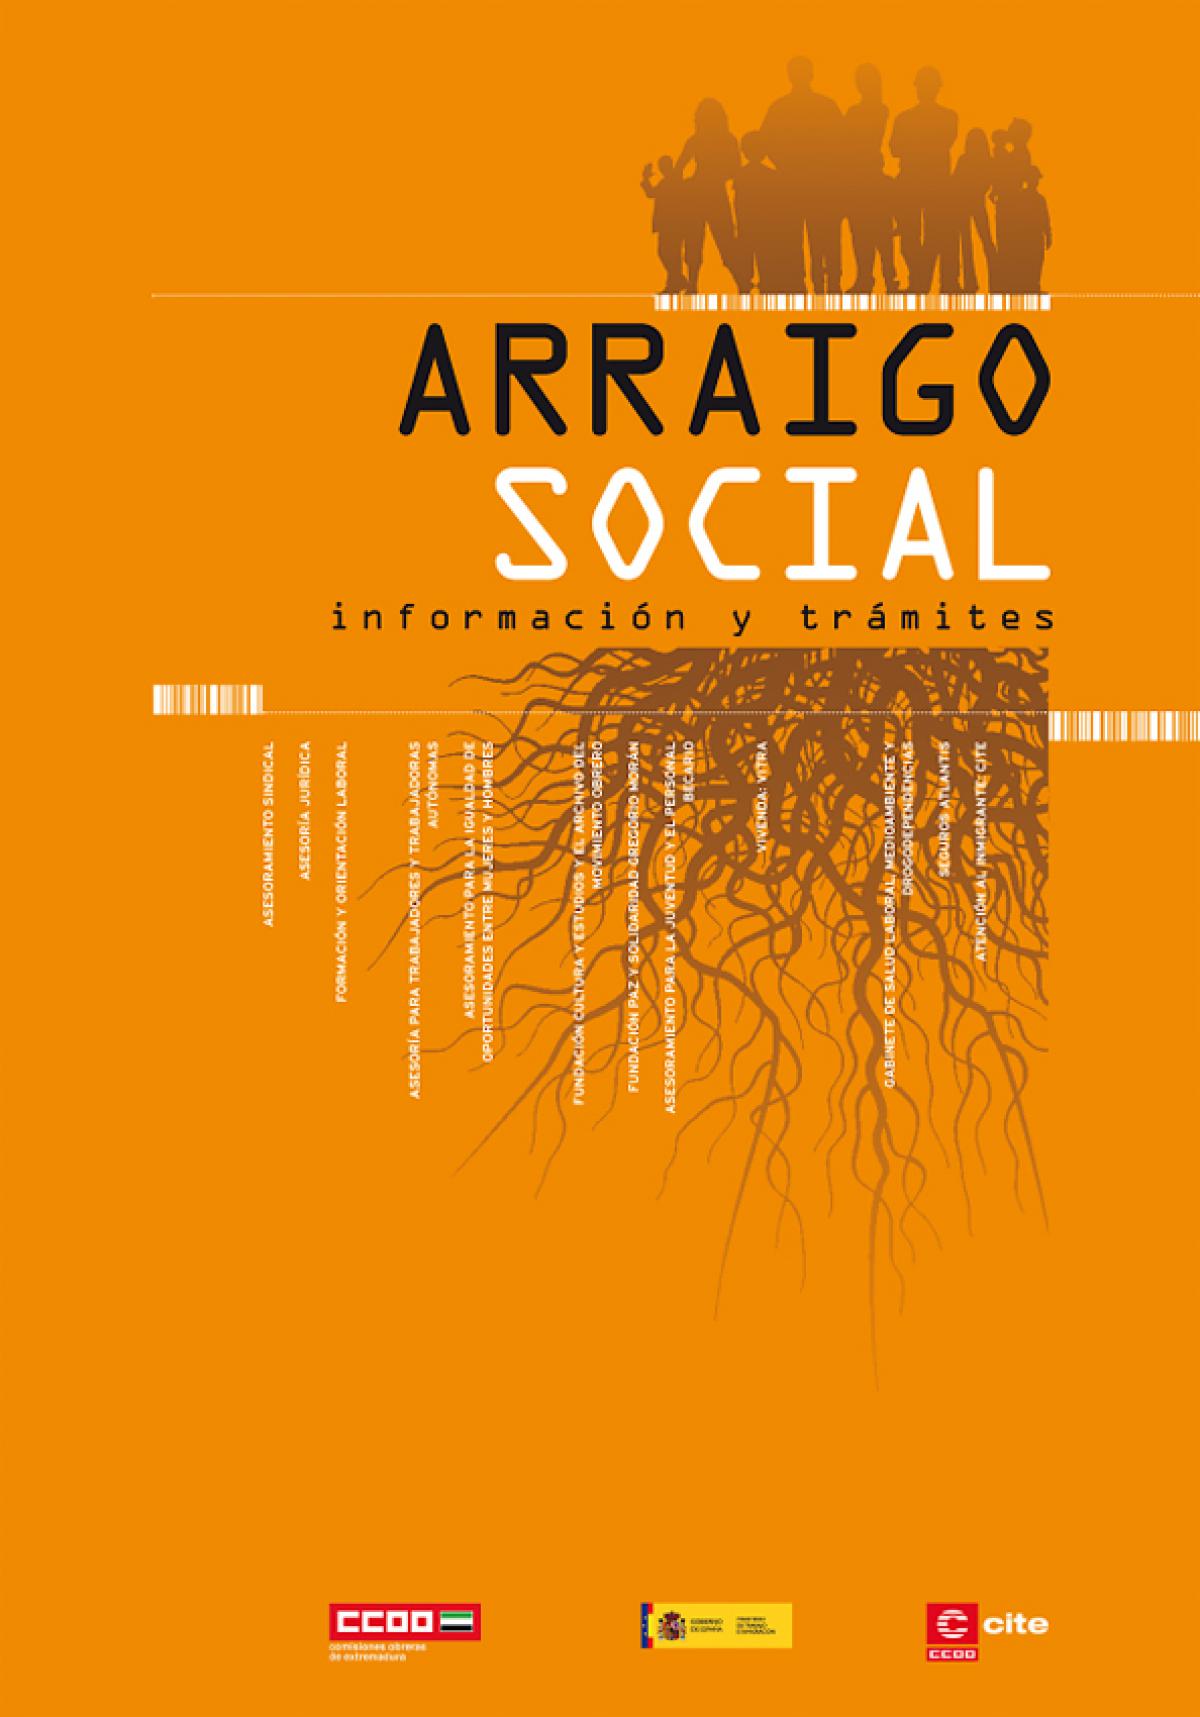 Carpeta informativa sobre el Arraigo Social en CASTELLANO